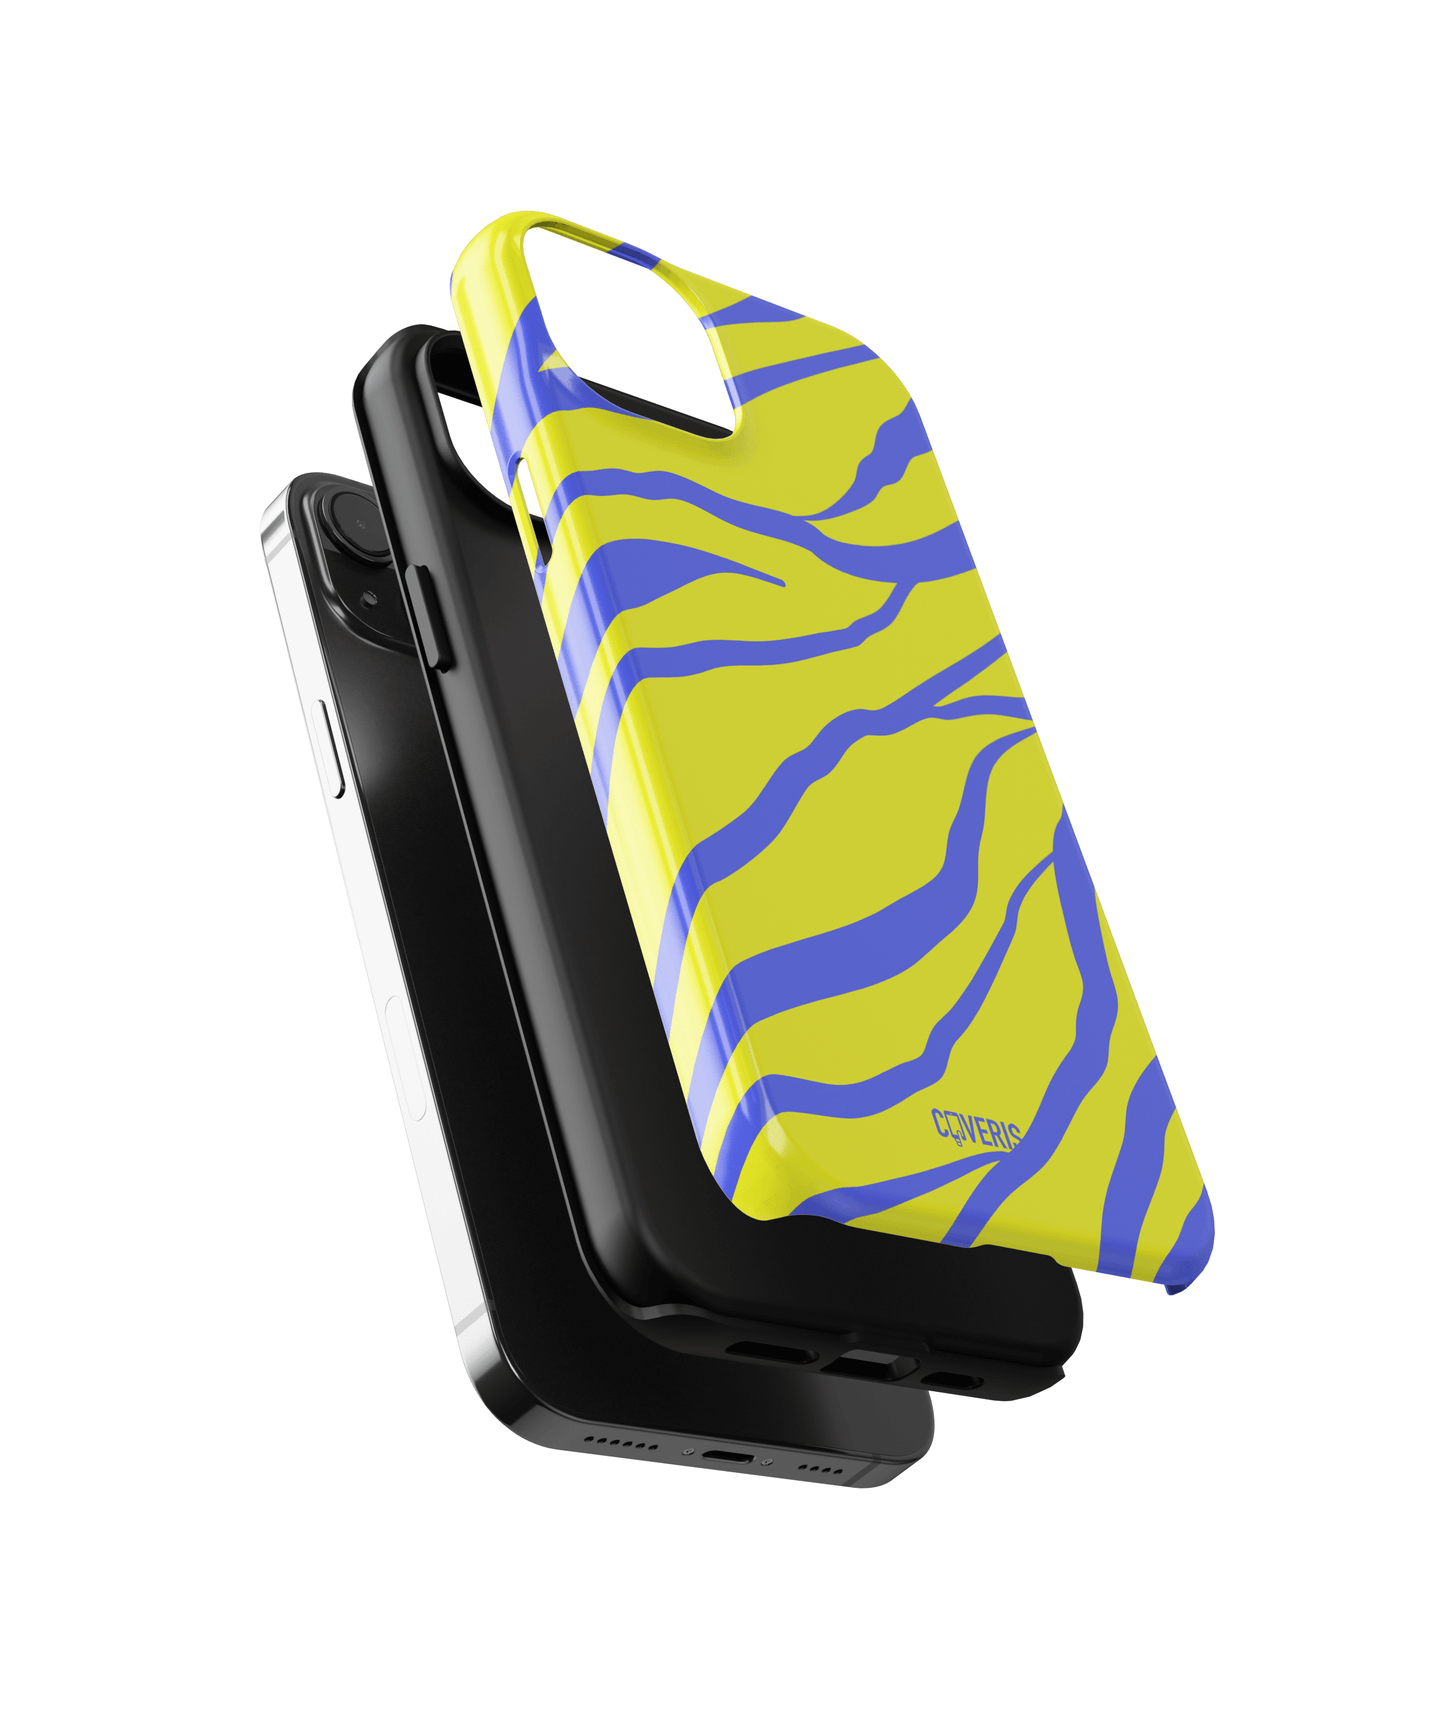 Neonique - Huawei P40 phone case